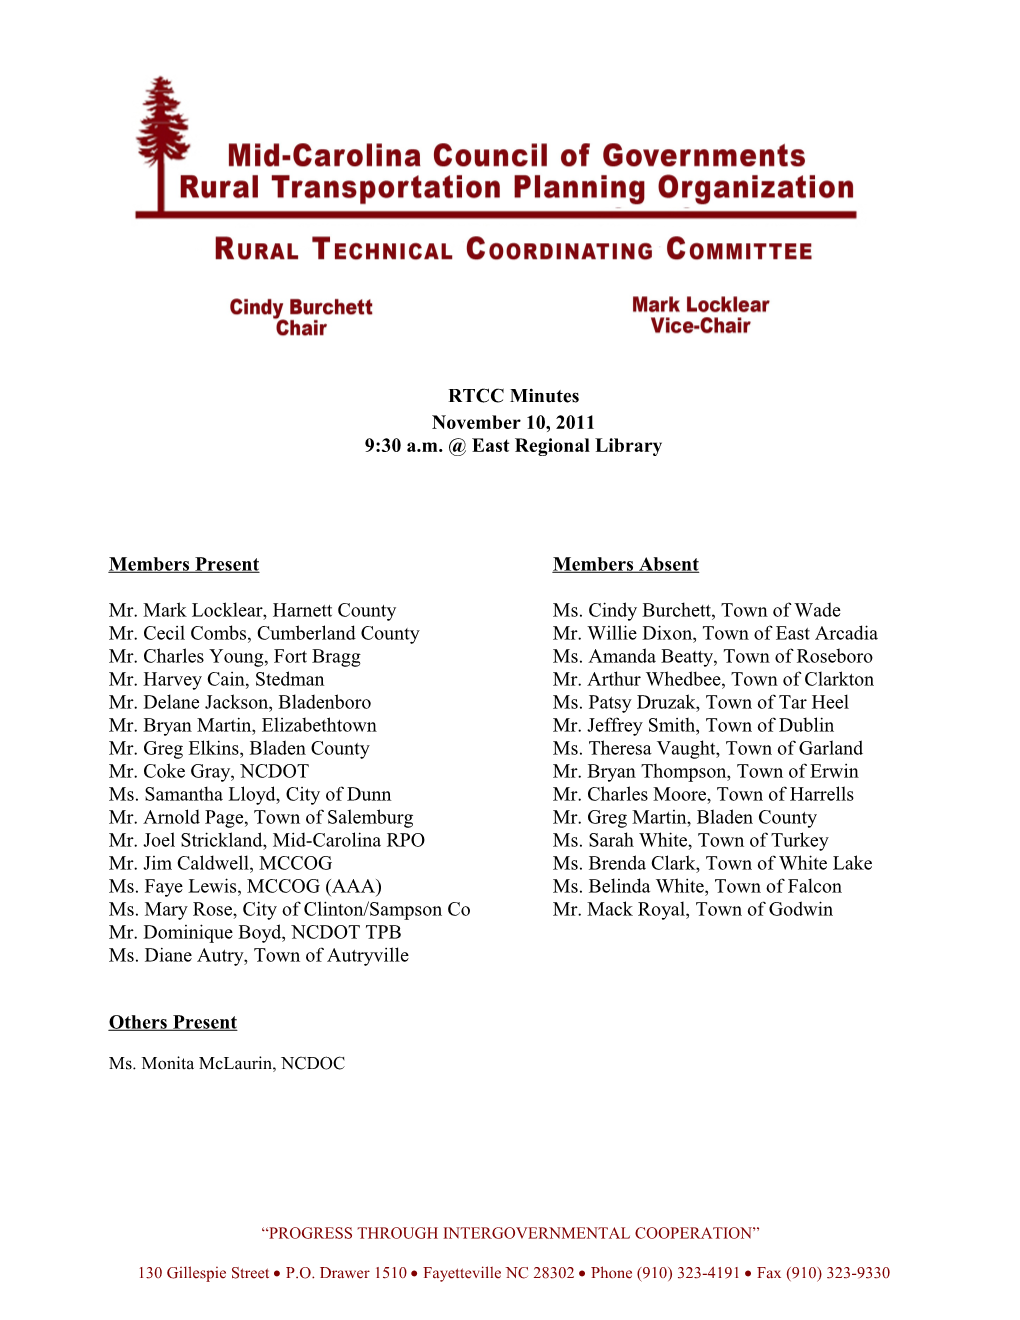 Mid-Carolina Rural Transportation Planning Organization